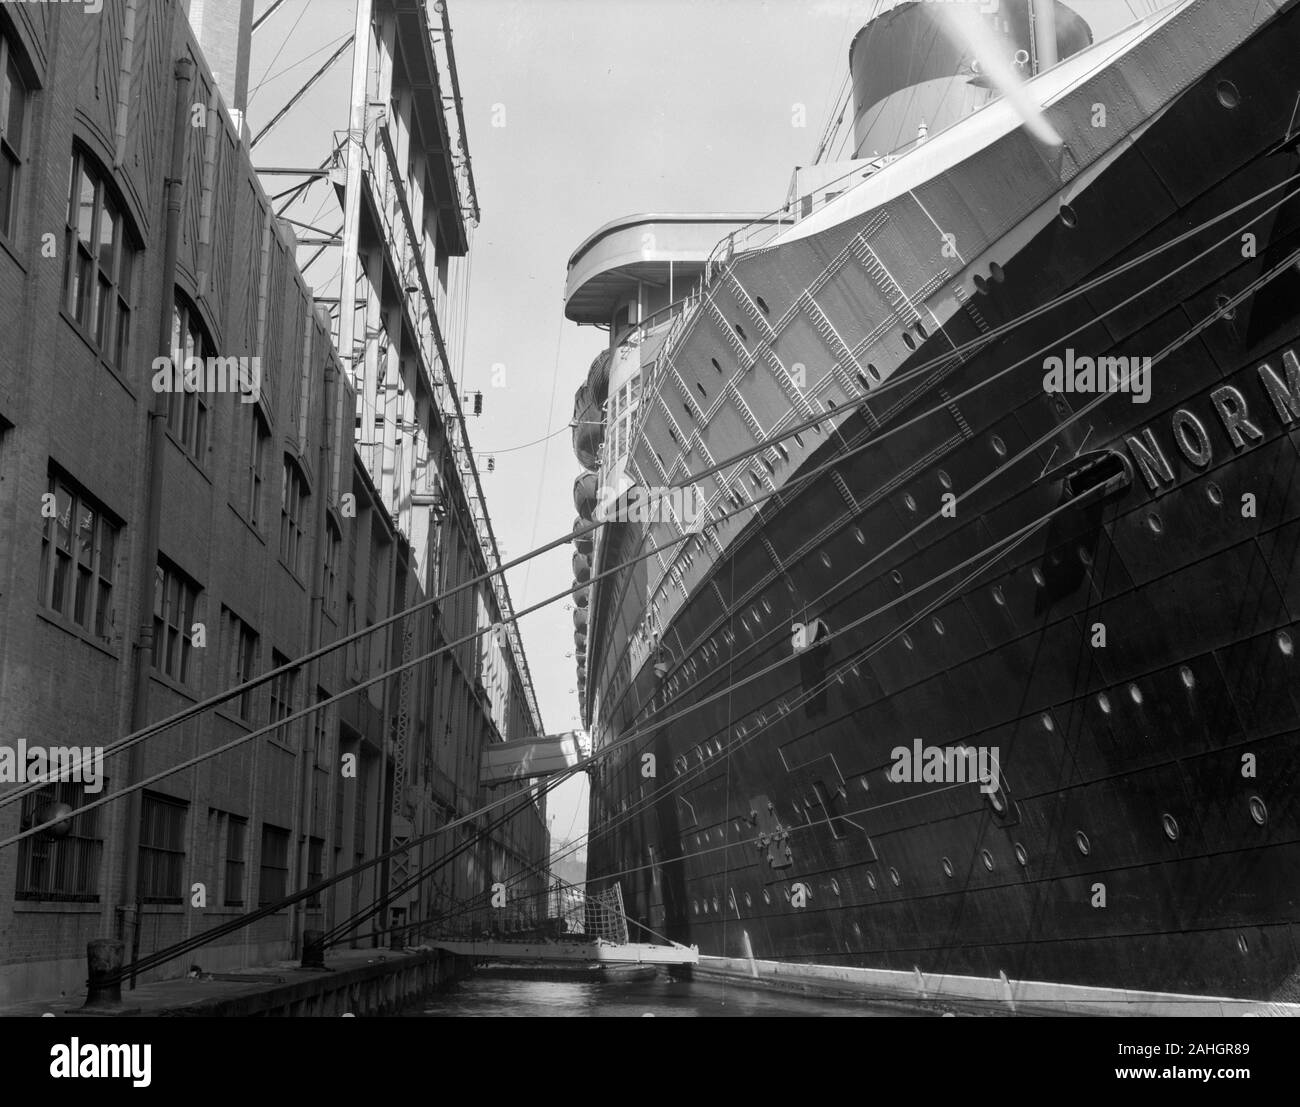 La SS Normandie, al dock in New York, durante la fase di rimontaggio per servire come una nave di truppe nella seconda guerra mondiale. La data della fotografia è incerta, ma è chiaramente prima dell'incendio che assillano la nave nel febbraio 1942 Foto Stock